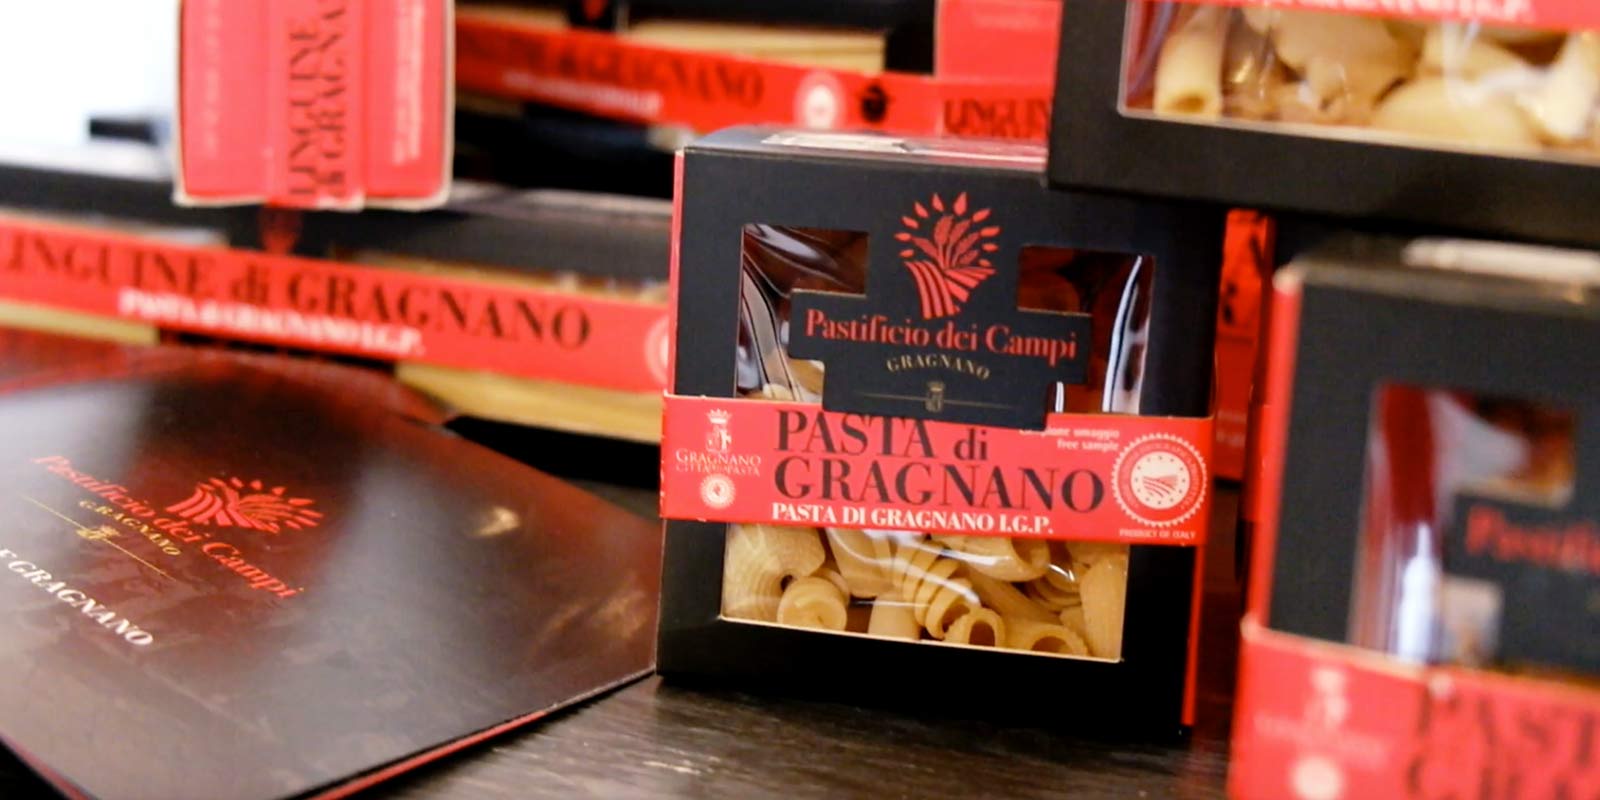 Pastifico dei Campi - Pasta di Gragnano IGP Pastificio dei Campi proizvaja nekaj italijanskih klasik in nekaj izvirnih stvaritev. Testenine so narejene iz 100% italijanskega psenicnega zdroba durum in ekstrudirane v bronastih kalupih.